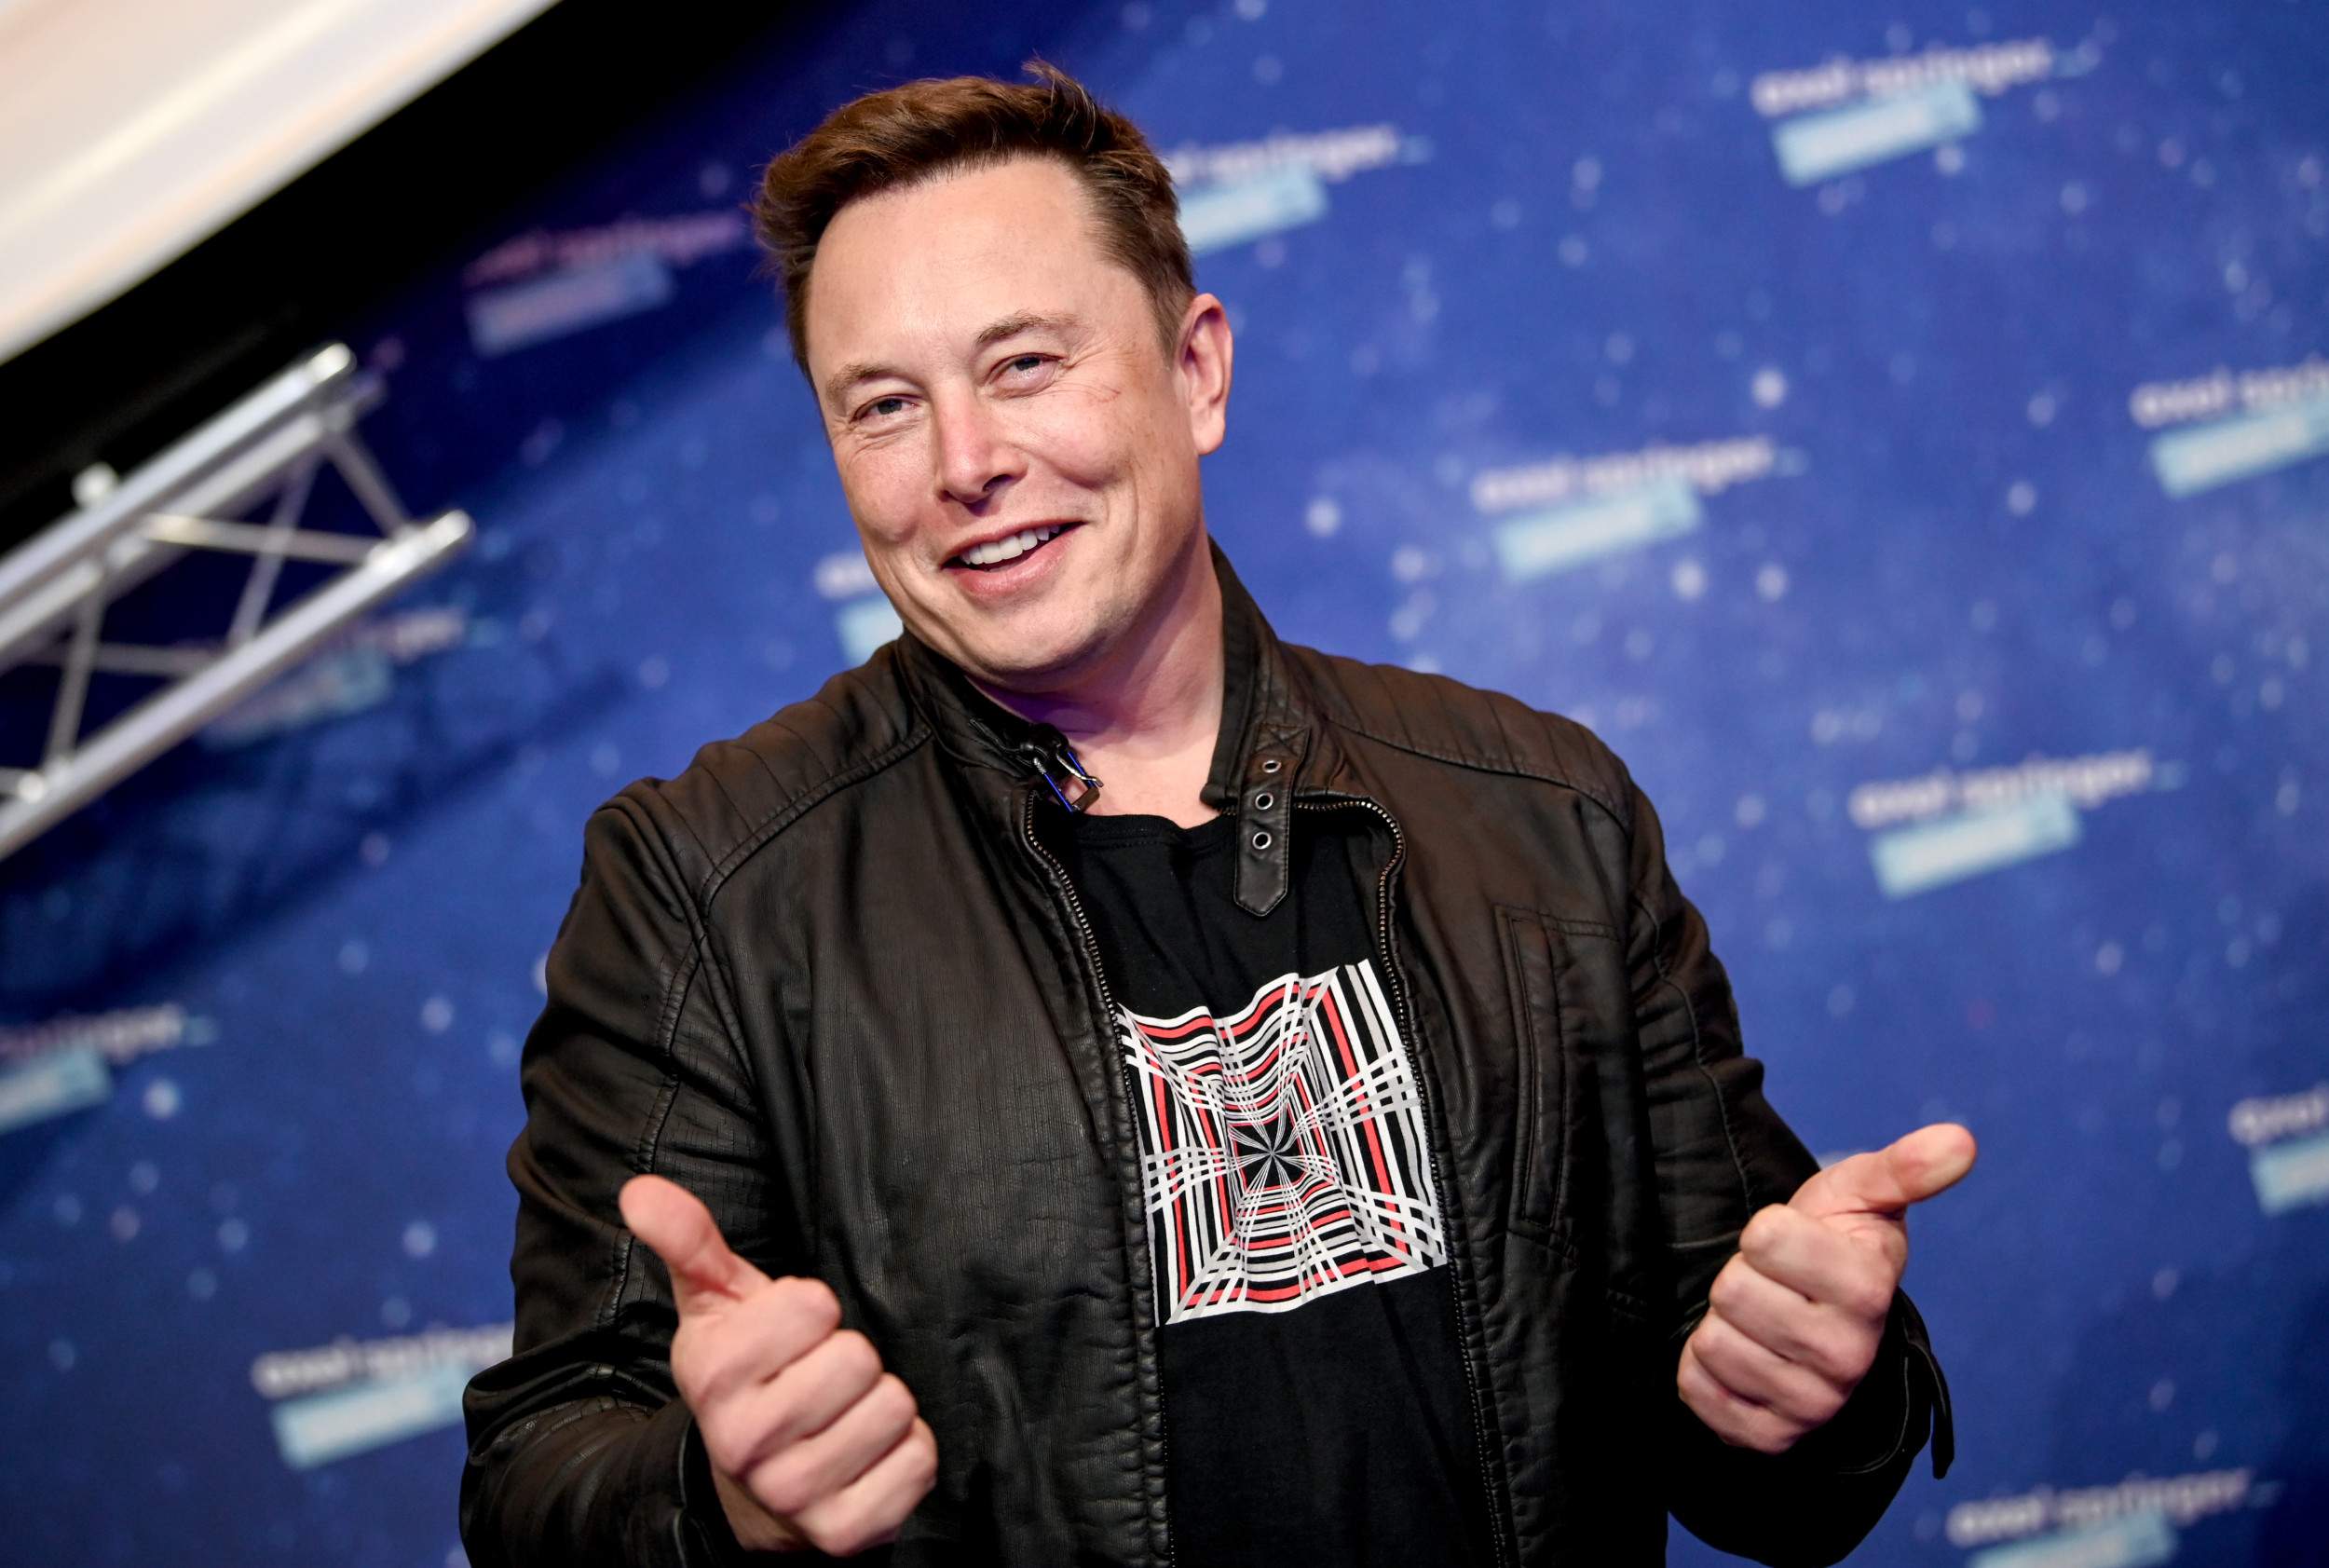 Elon Musk ar consuma droguri ilegale, precum LSD, cocaină, ecstasy şi ketamină